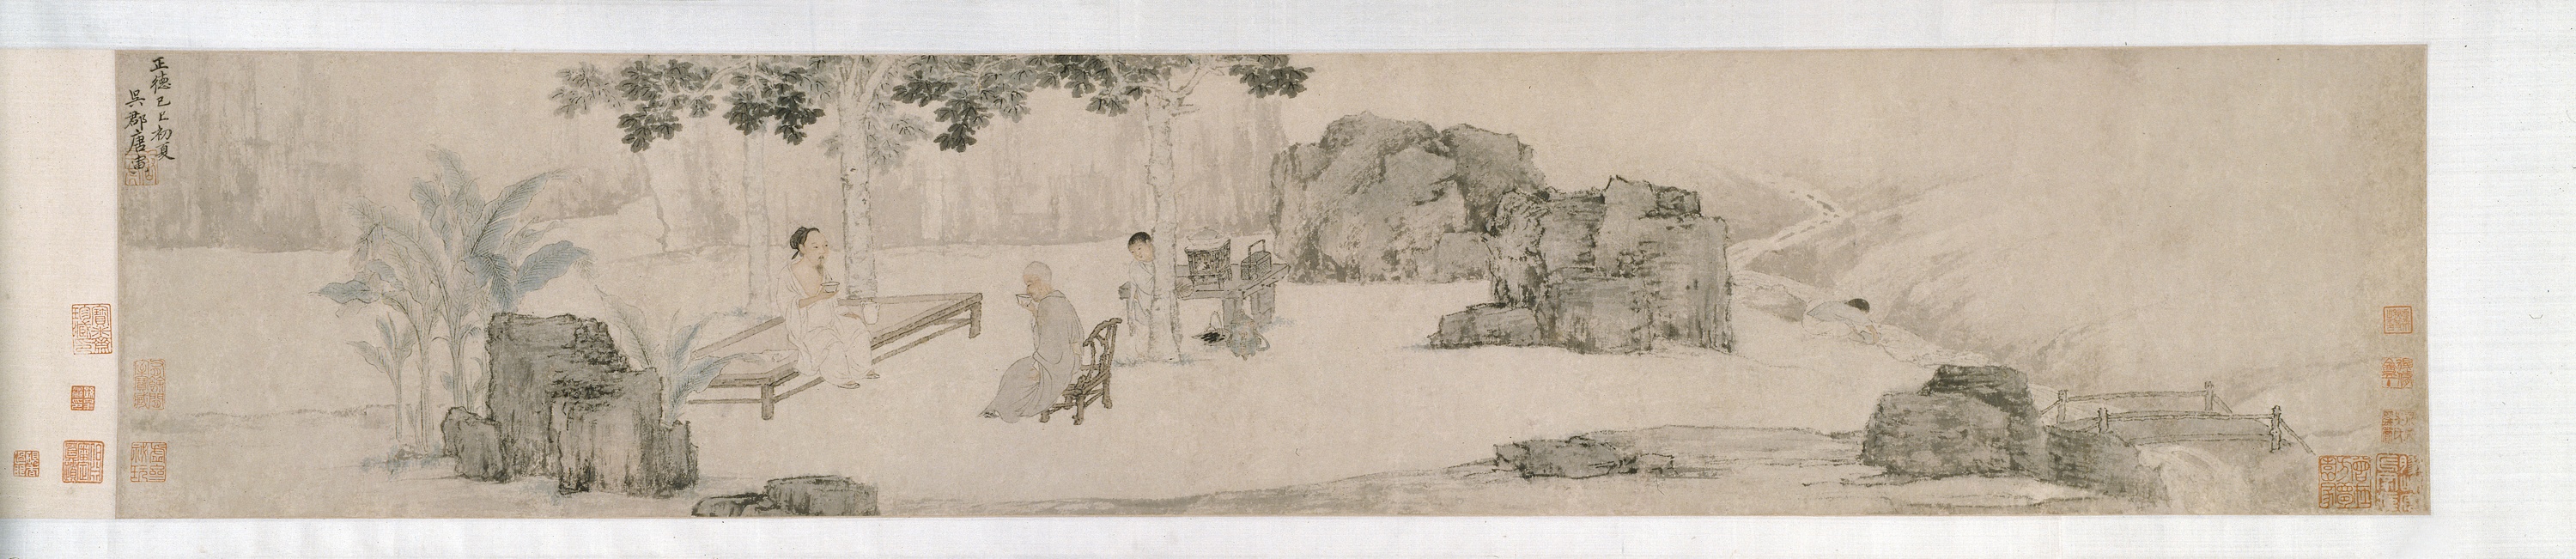 明朝唐寅《梧桐树下喝茶》,1509年作品